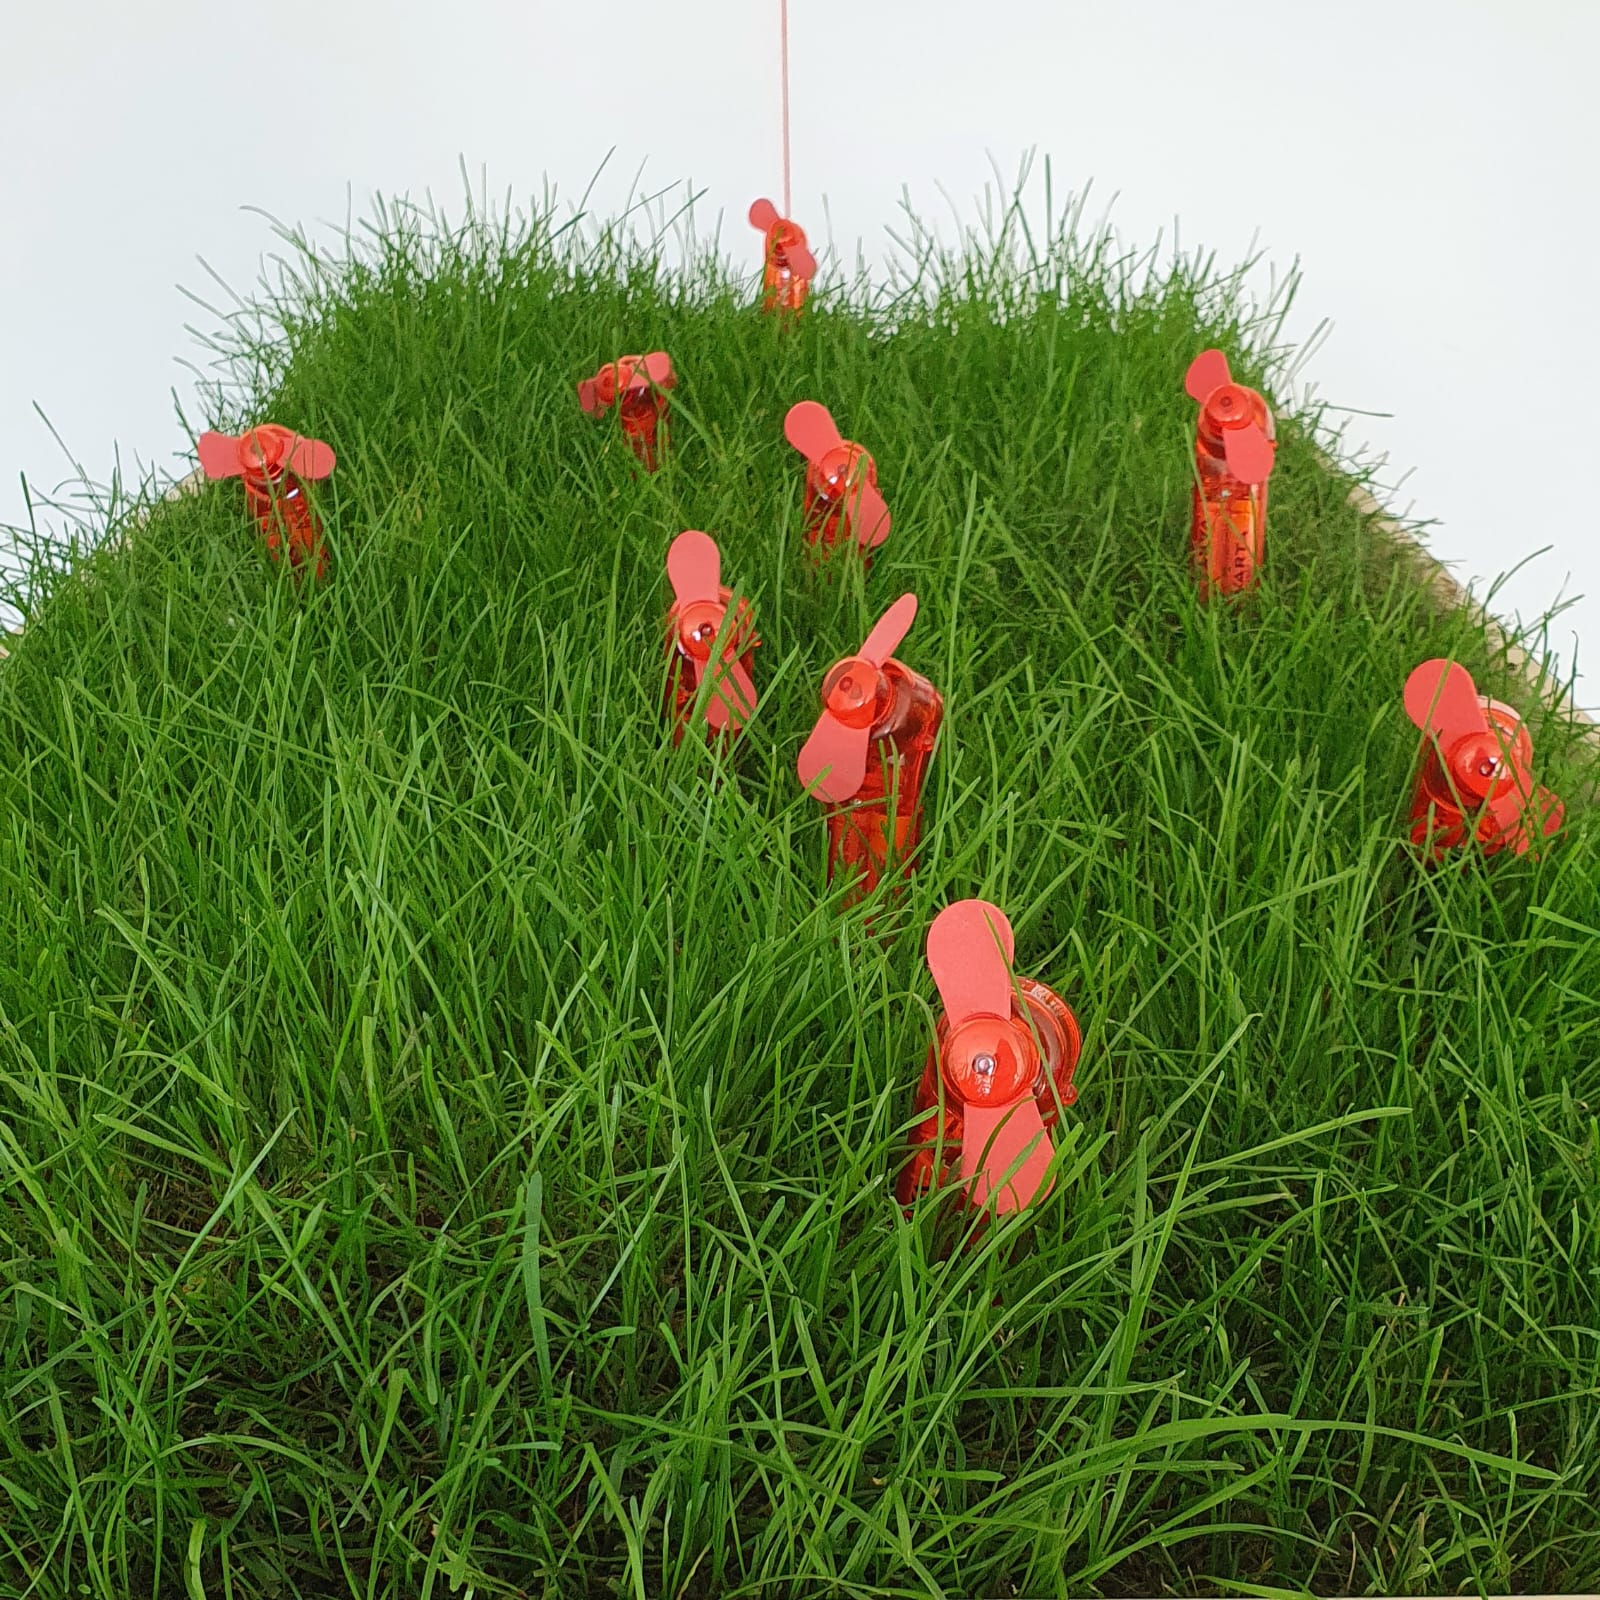 Eine Grasfläche mit roten Handventilatoren